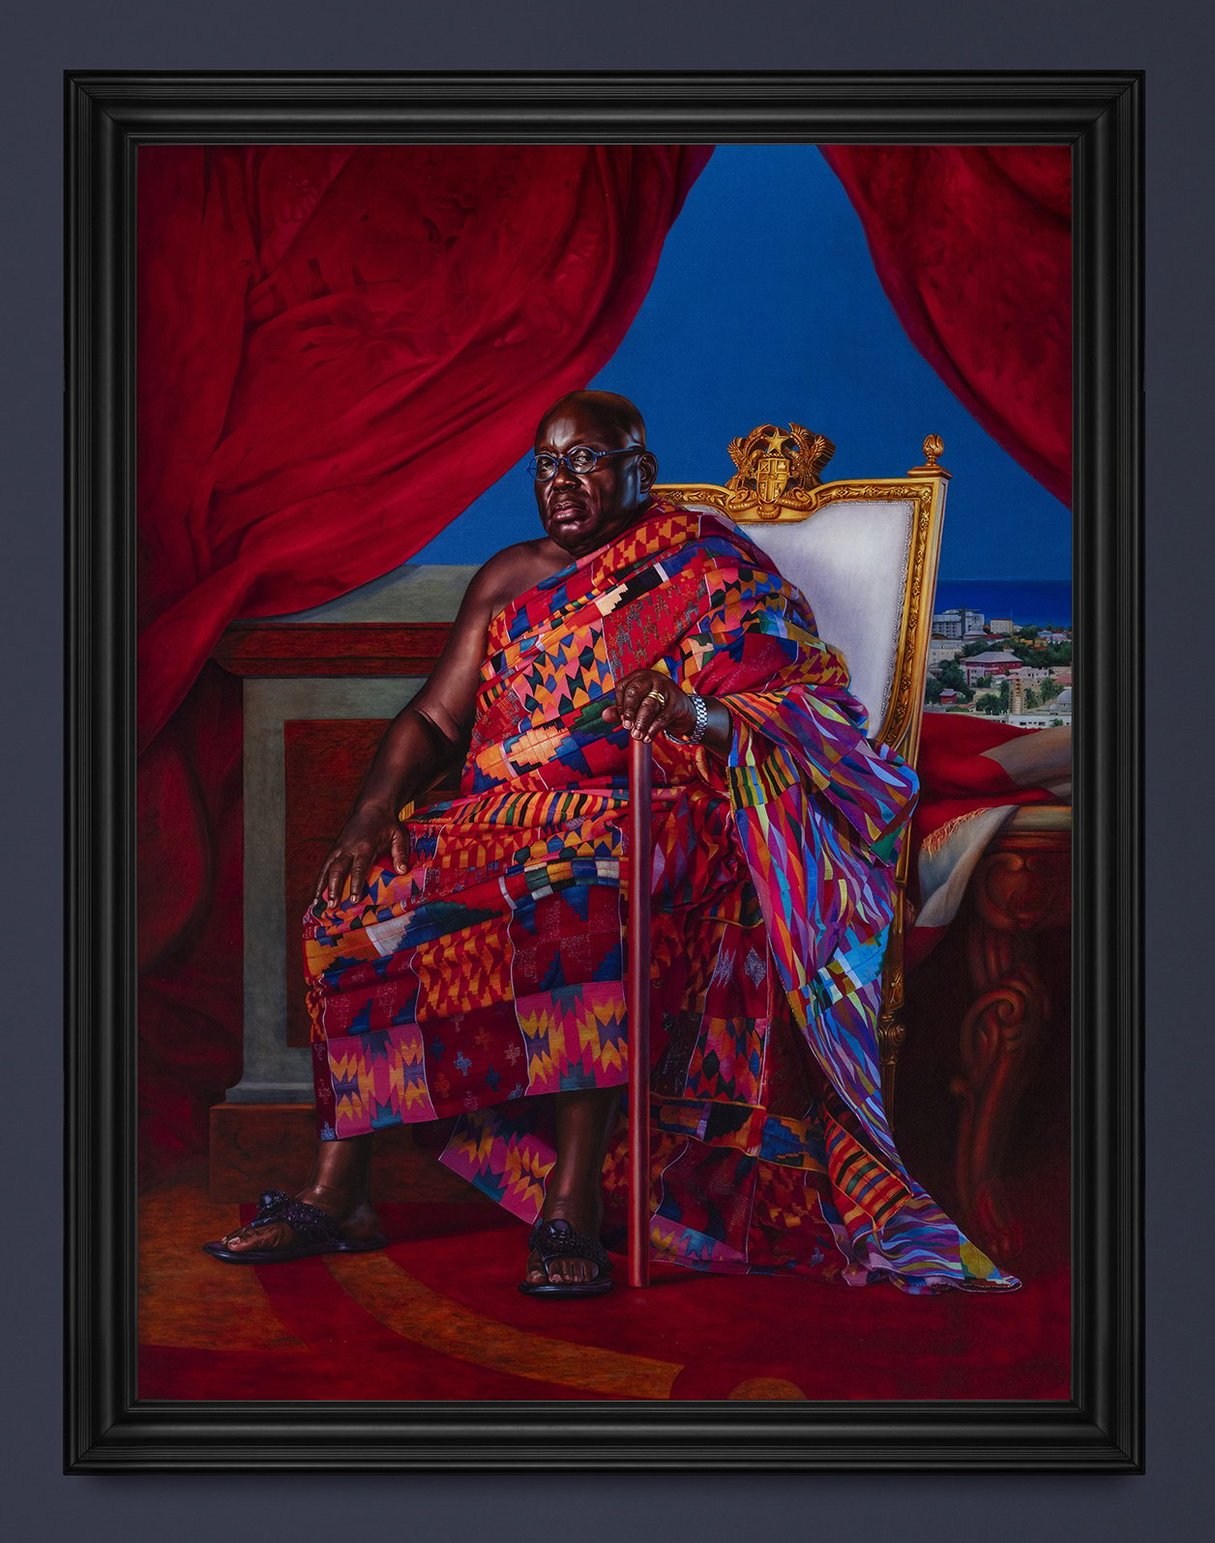 Nana Akufo-Addo, président du Ghana, par l'artiste Kehinde Wiley, un tableau exposé au musée du quai Branly, à Paris. &copy; Tanguy Beurdeley/Courtesy Musée du Quai Branly